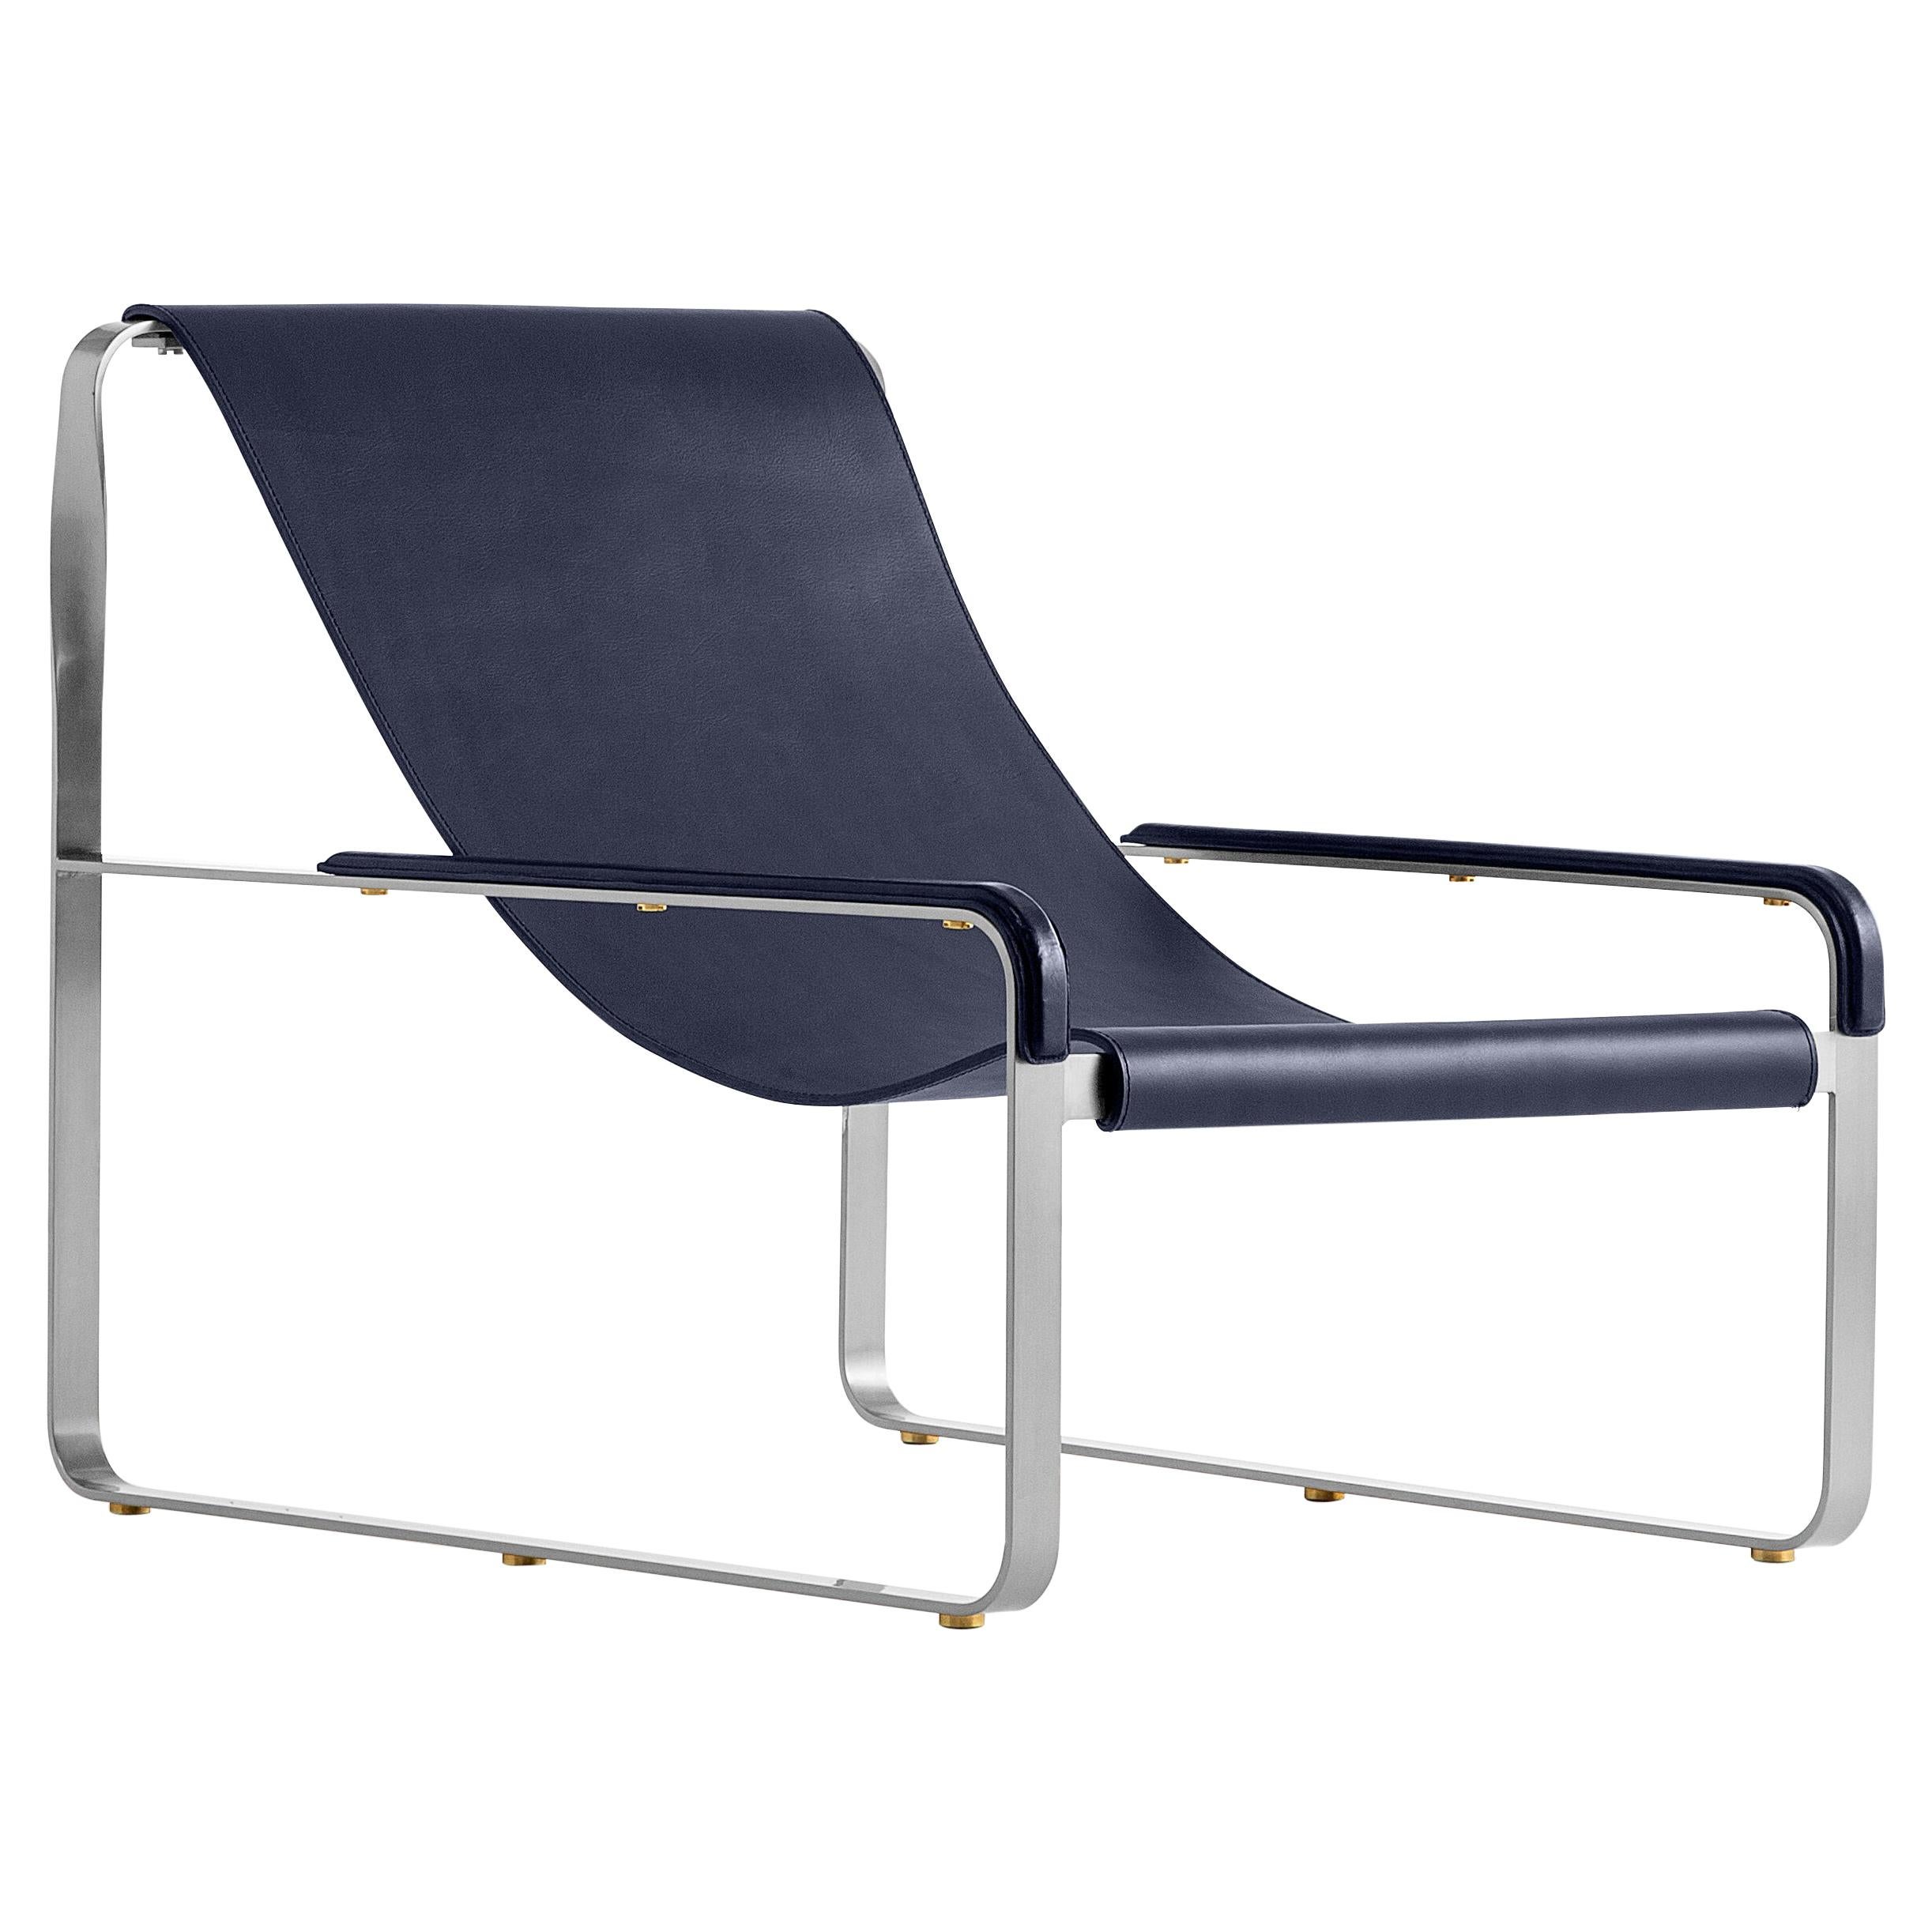 Chaise longue classique contemporaine faite à la main en métal argenté ancien et cuir bleu marine